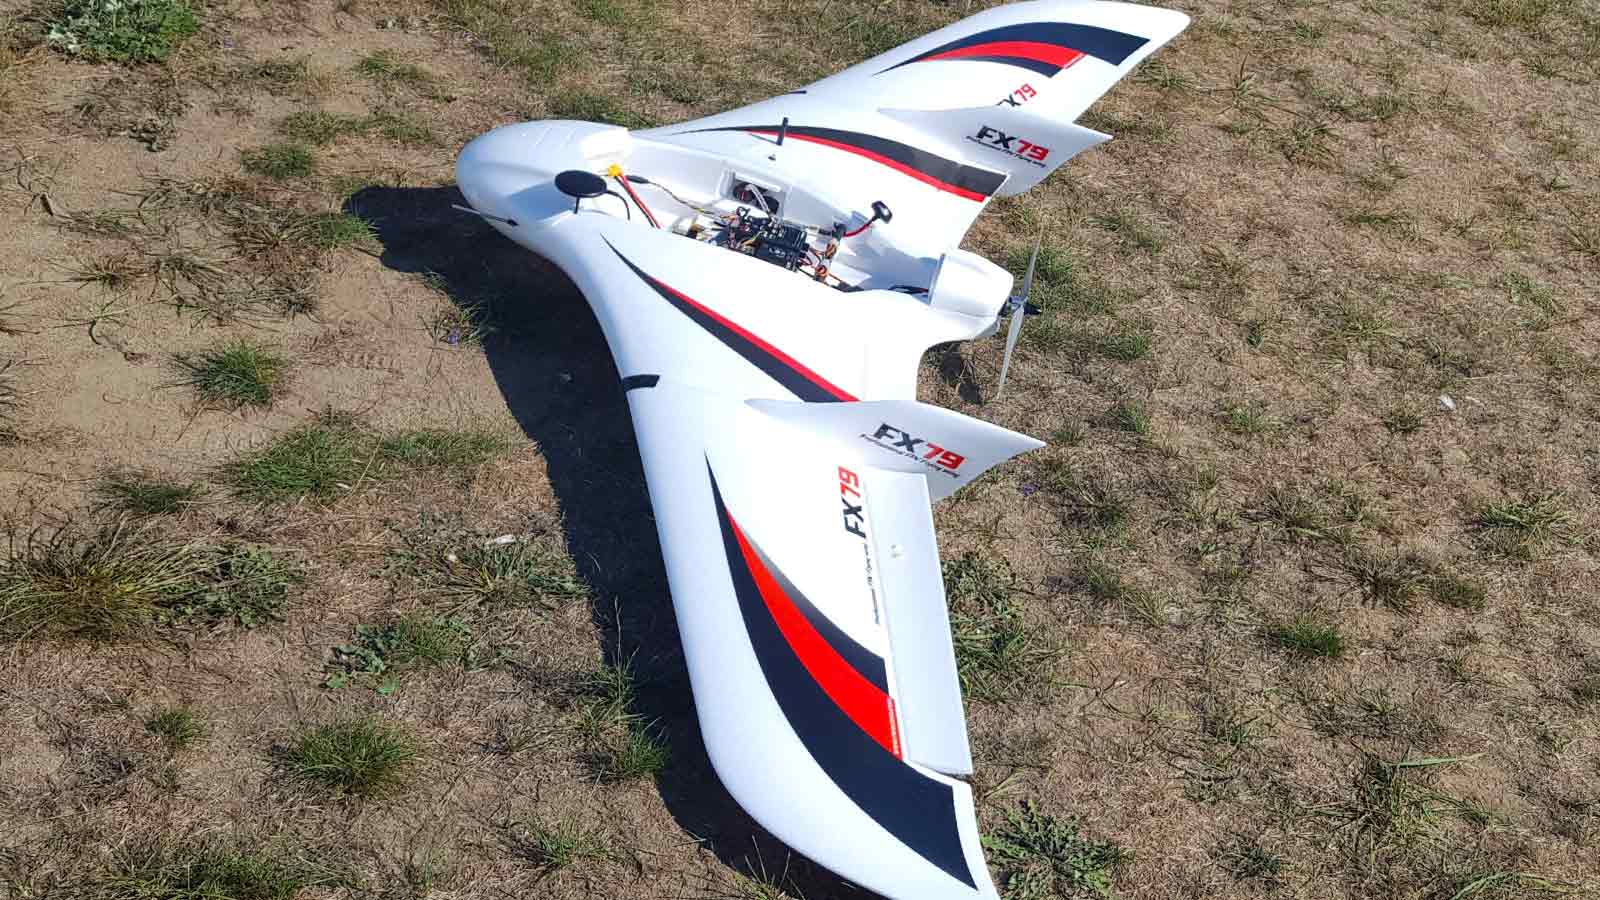 A DIY drone for site surveys